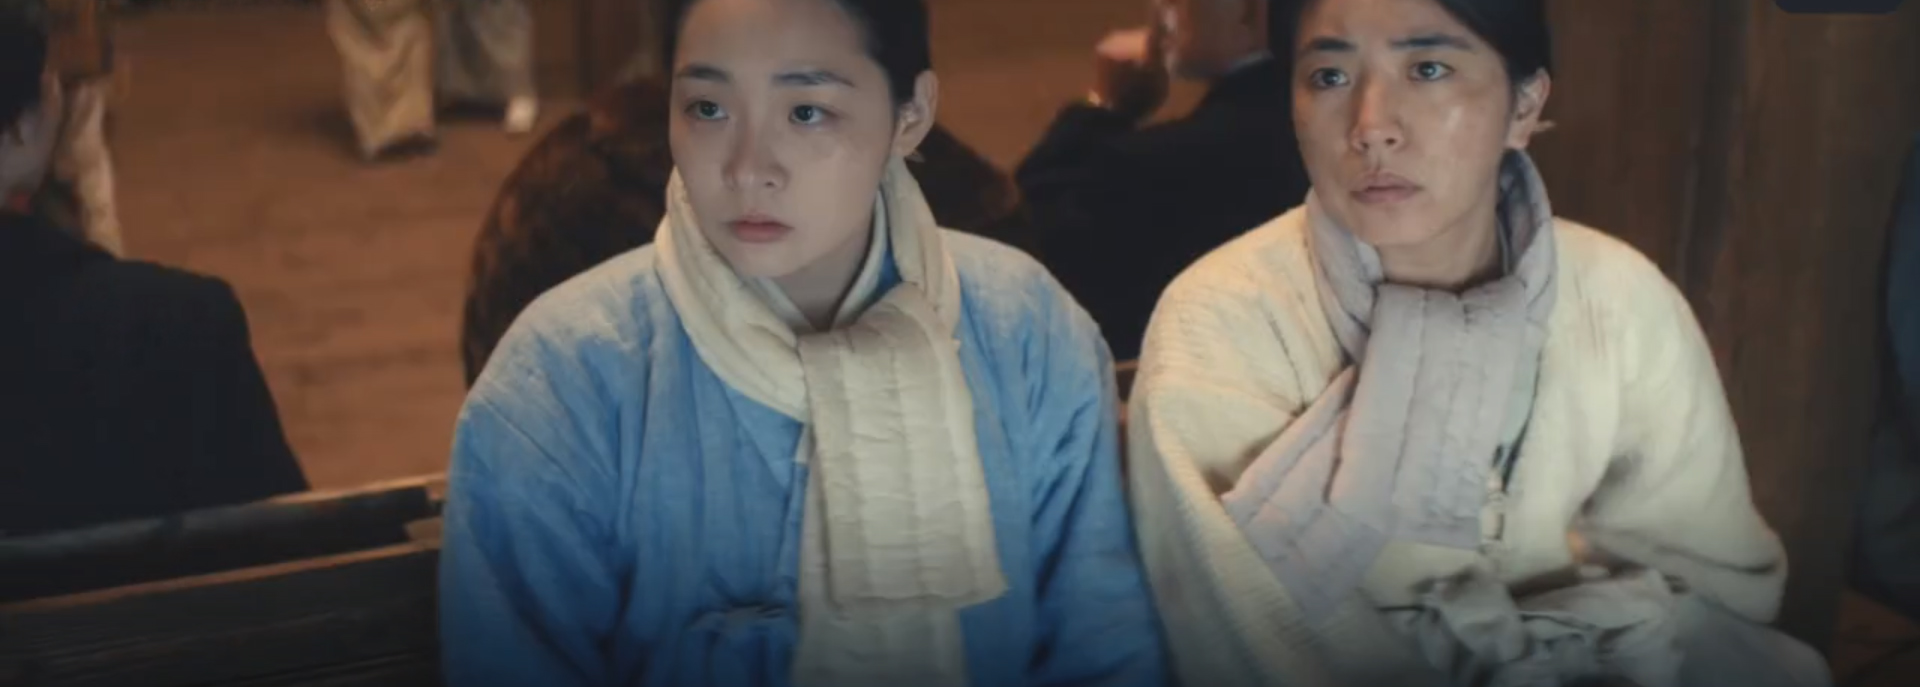 Pachinko tập 4: Lee Min Ho lật mặt nhanh hơn lật bánh tráng, xót xa số phận của Sun Ja - Ảnh 4.